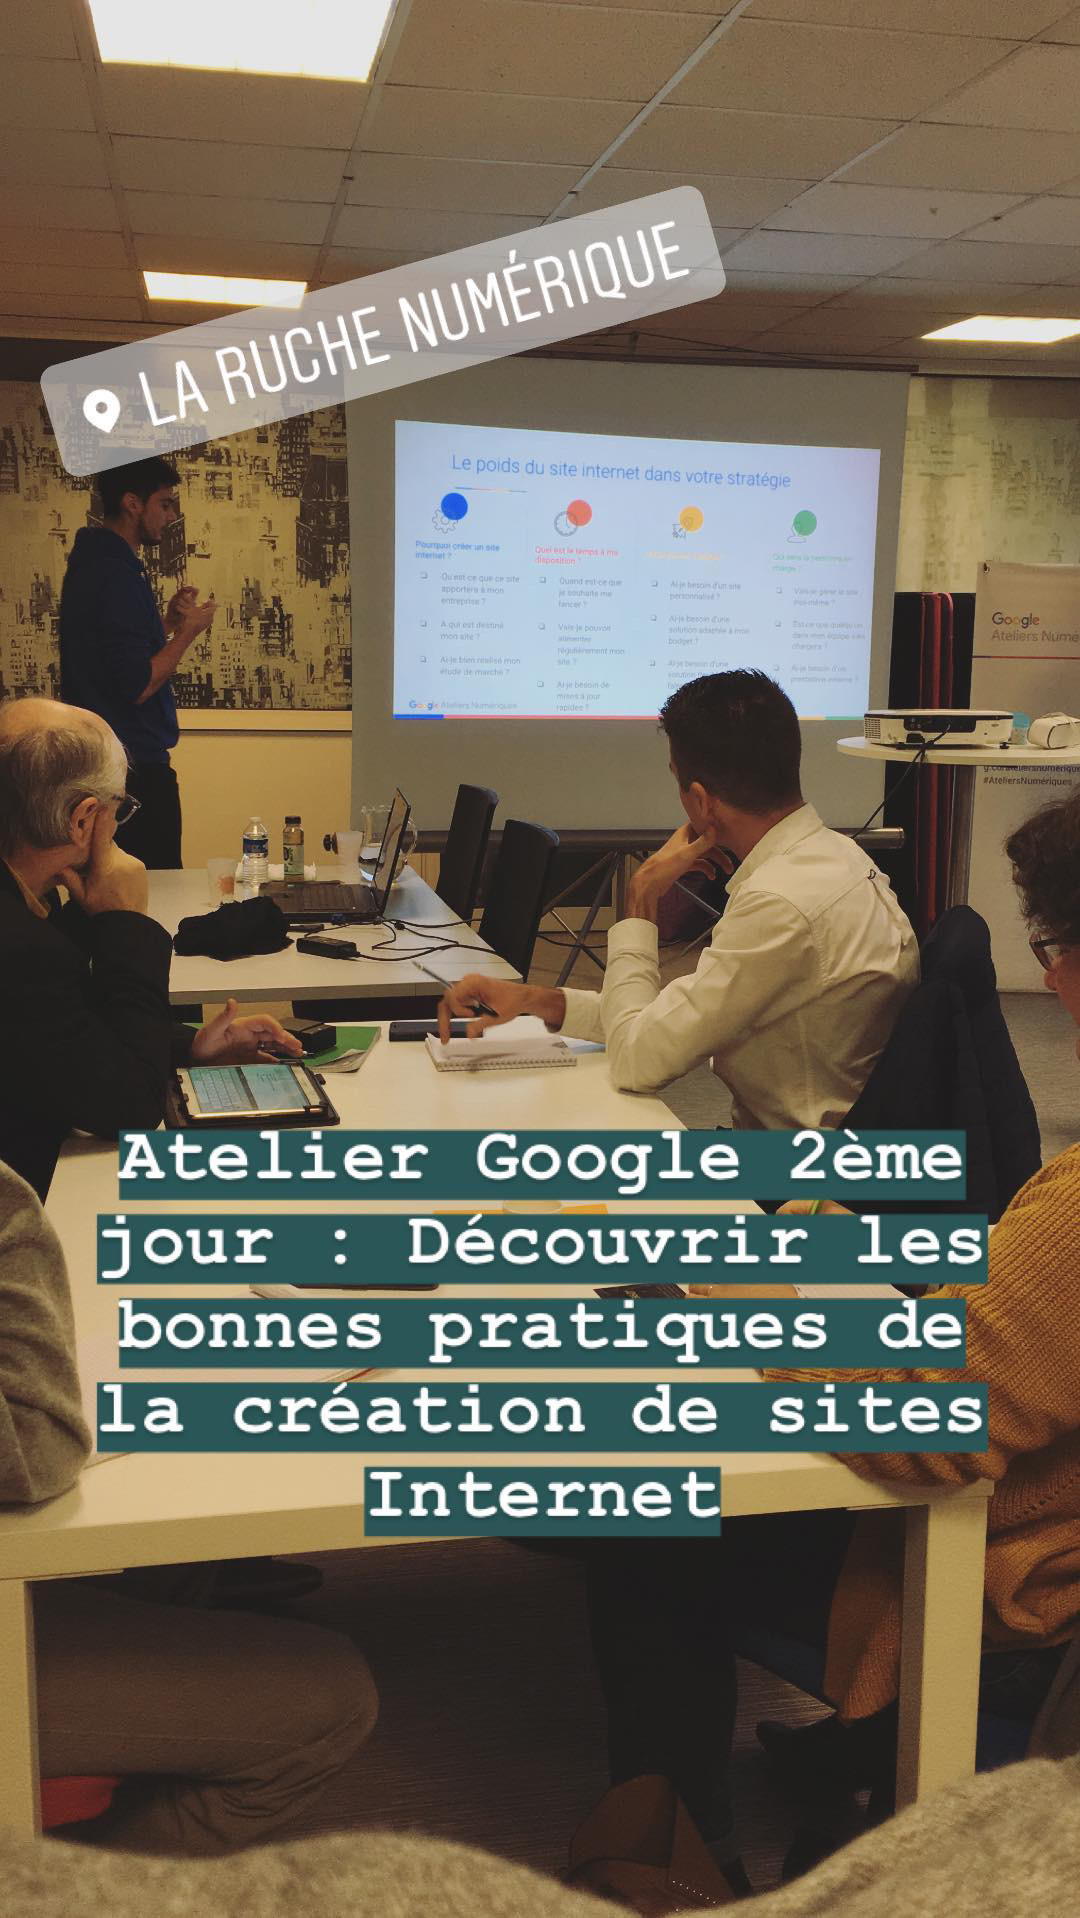 Atelier Google La Ruche numérique